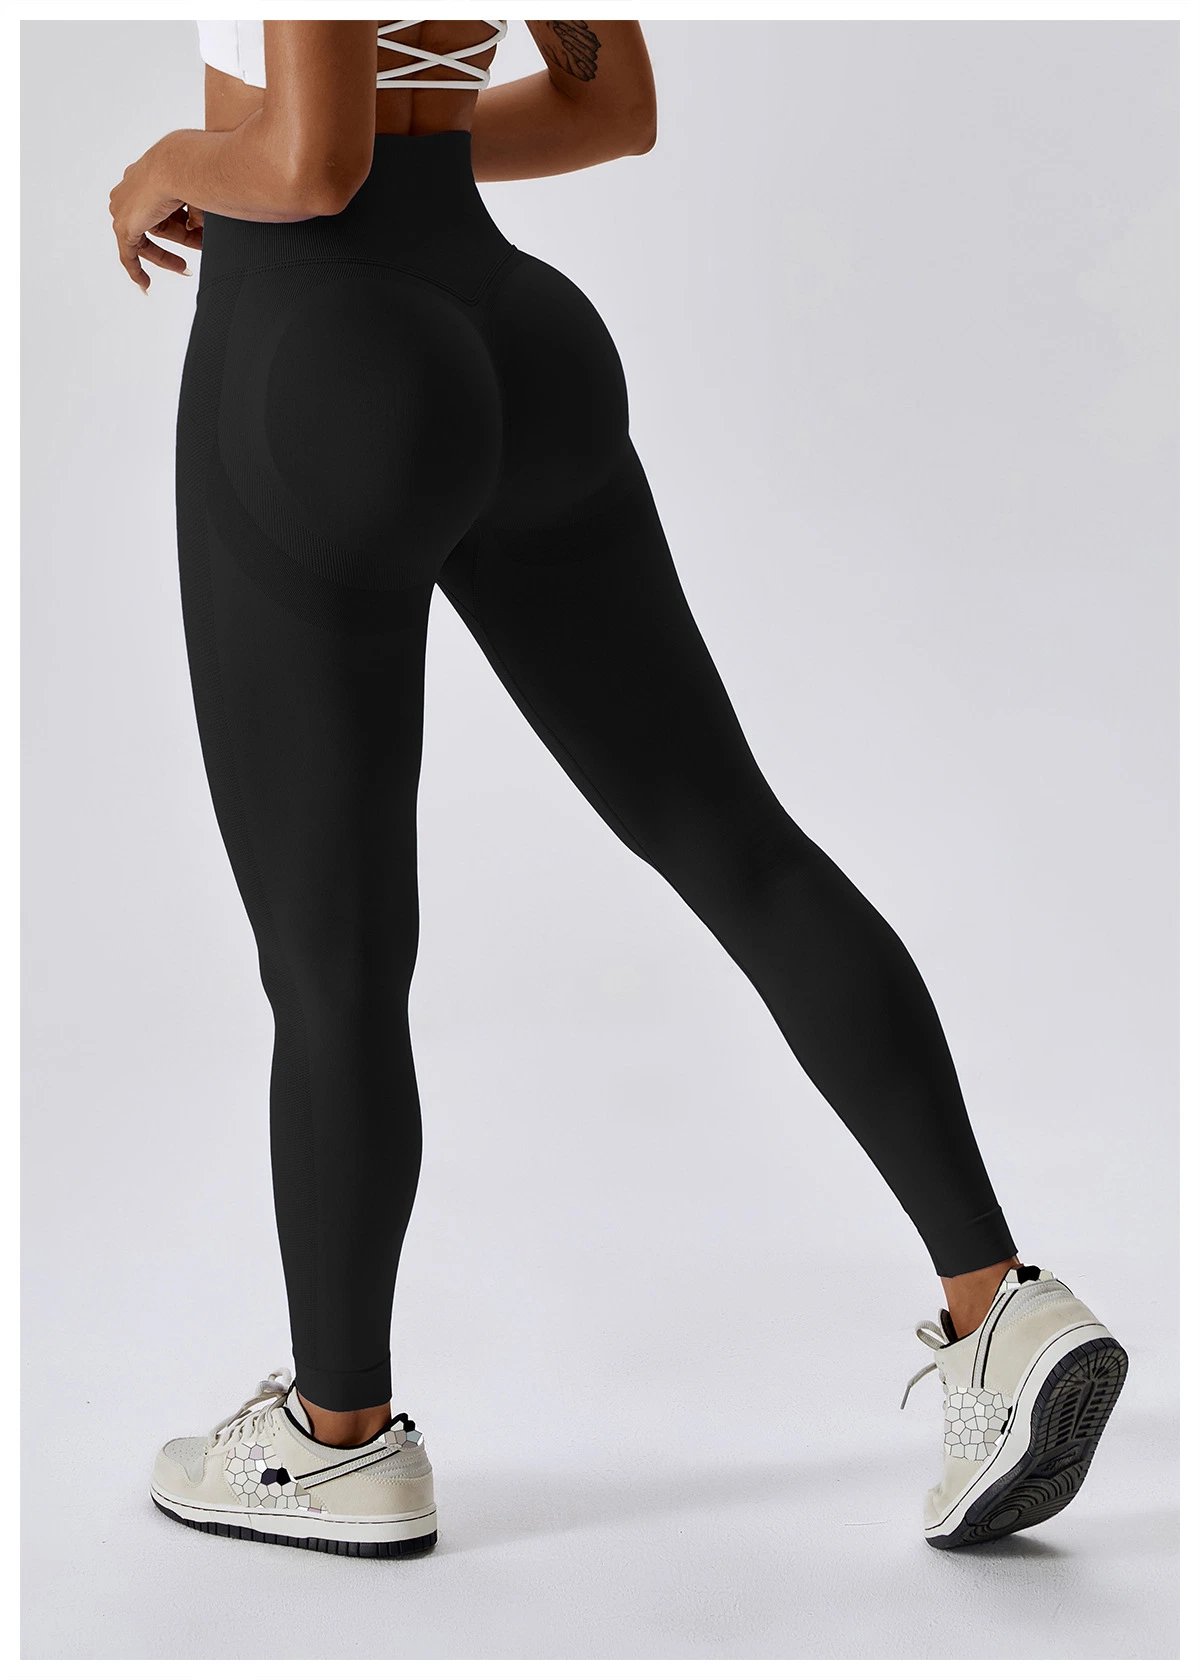 Бесшовные леггинсы для фитнеса Спорт женские тайтсы для тренинга на высокой таге на велотренирование Женские спортивные брюки для бега